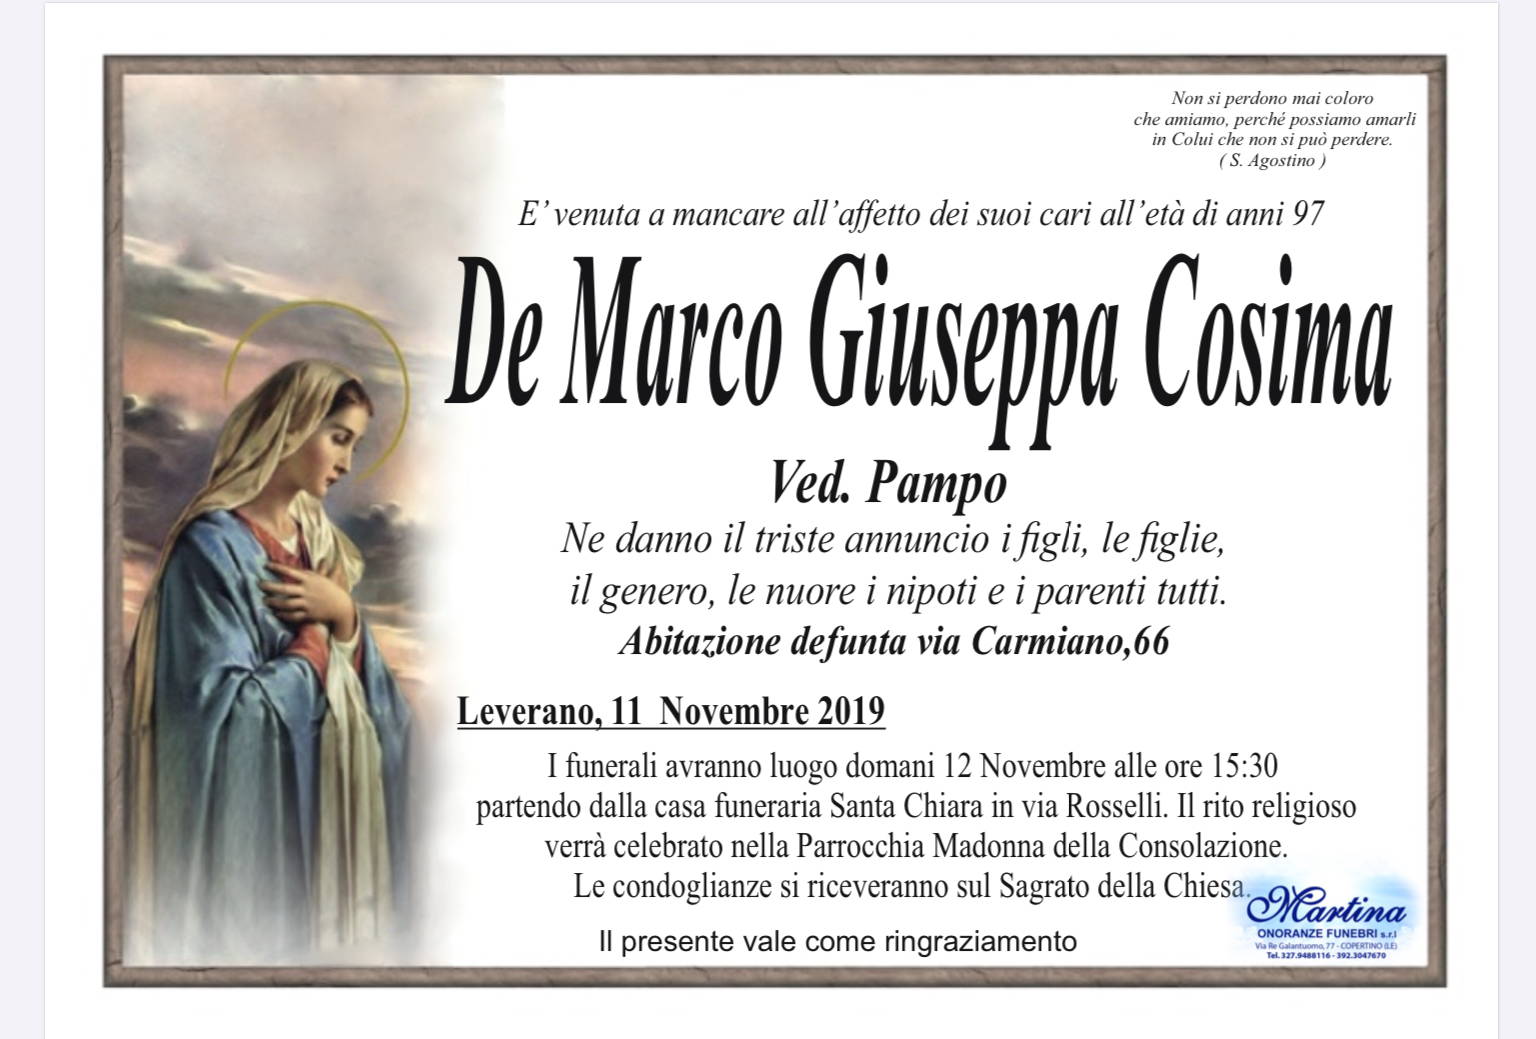 Giuseppa Cosima De Marco